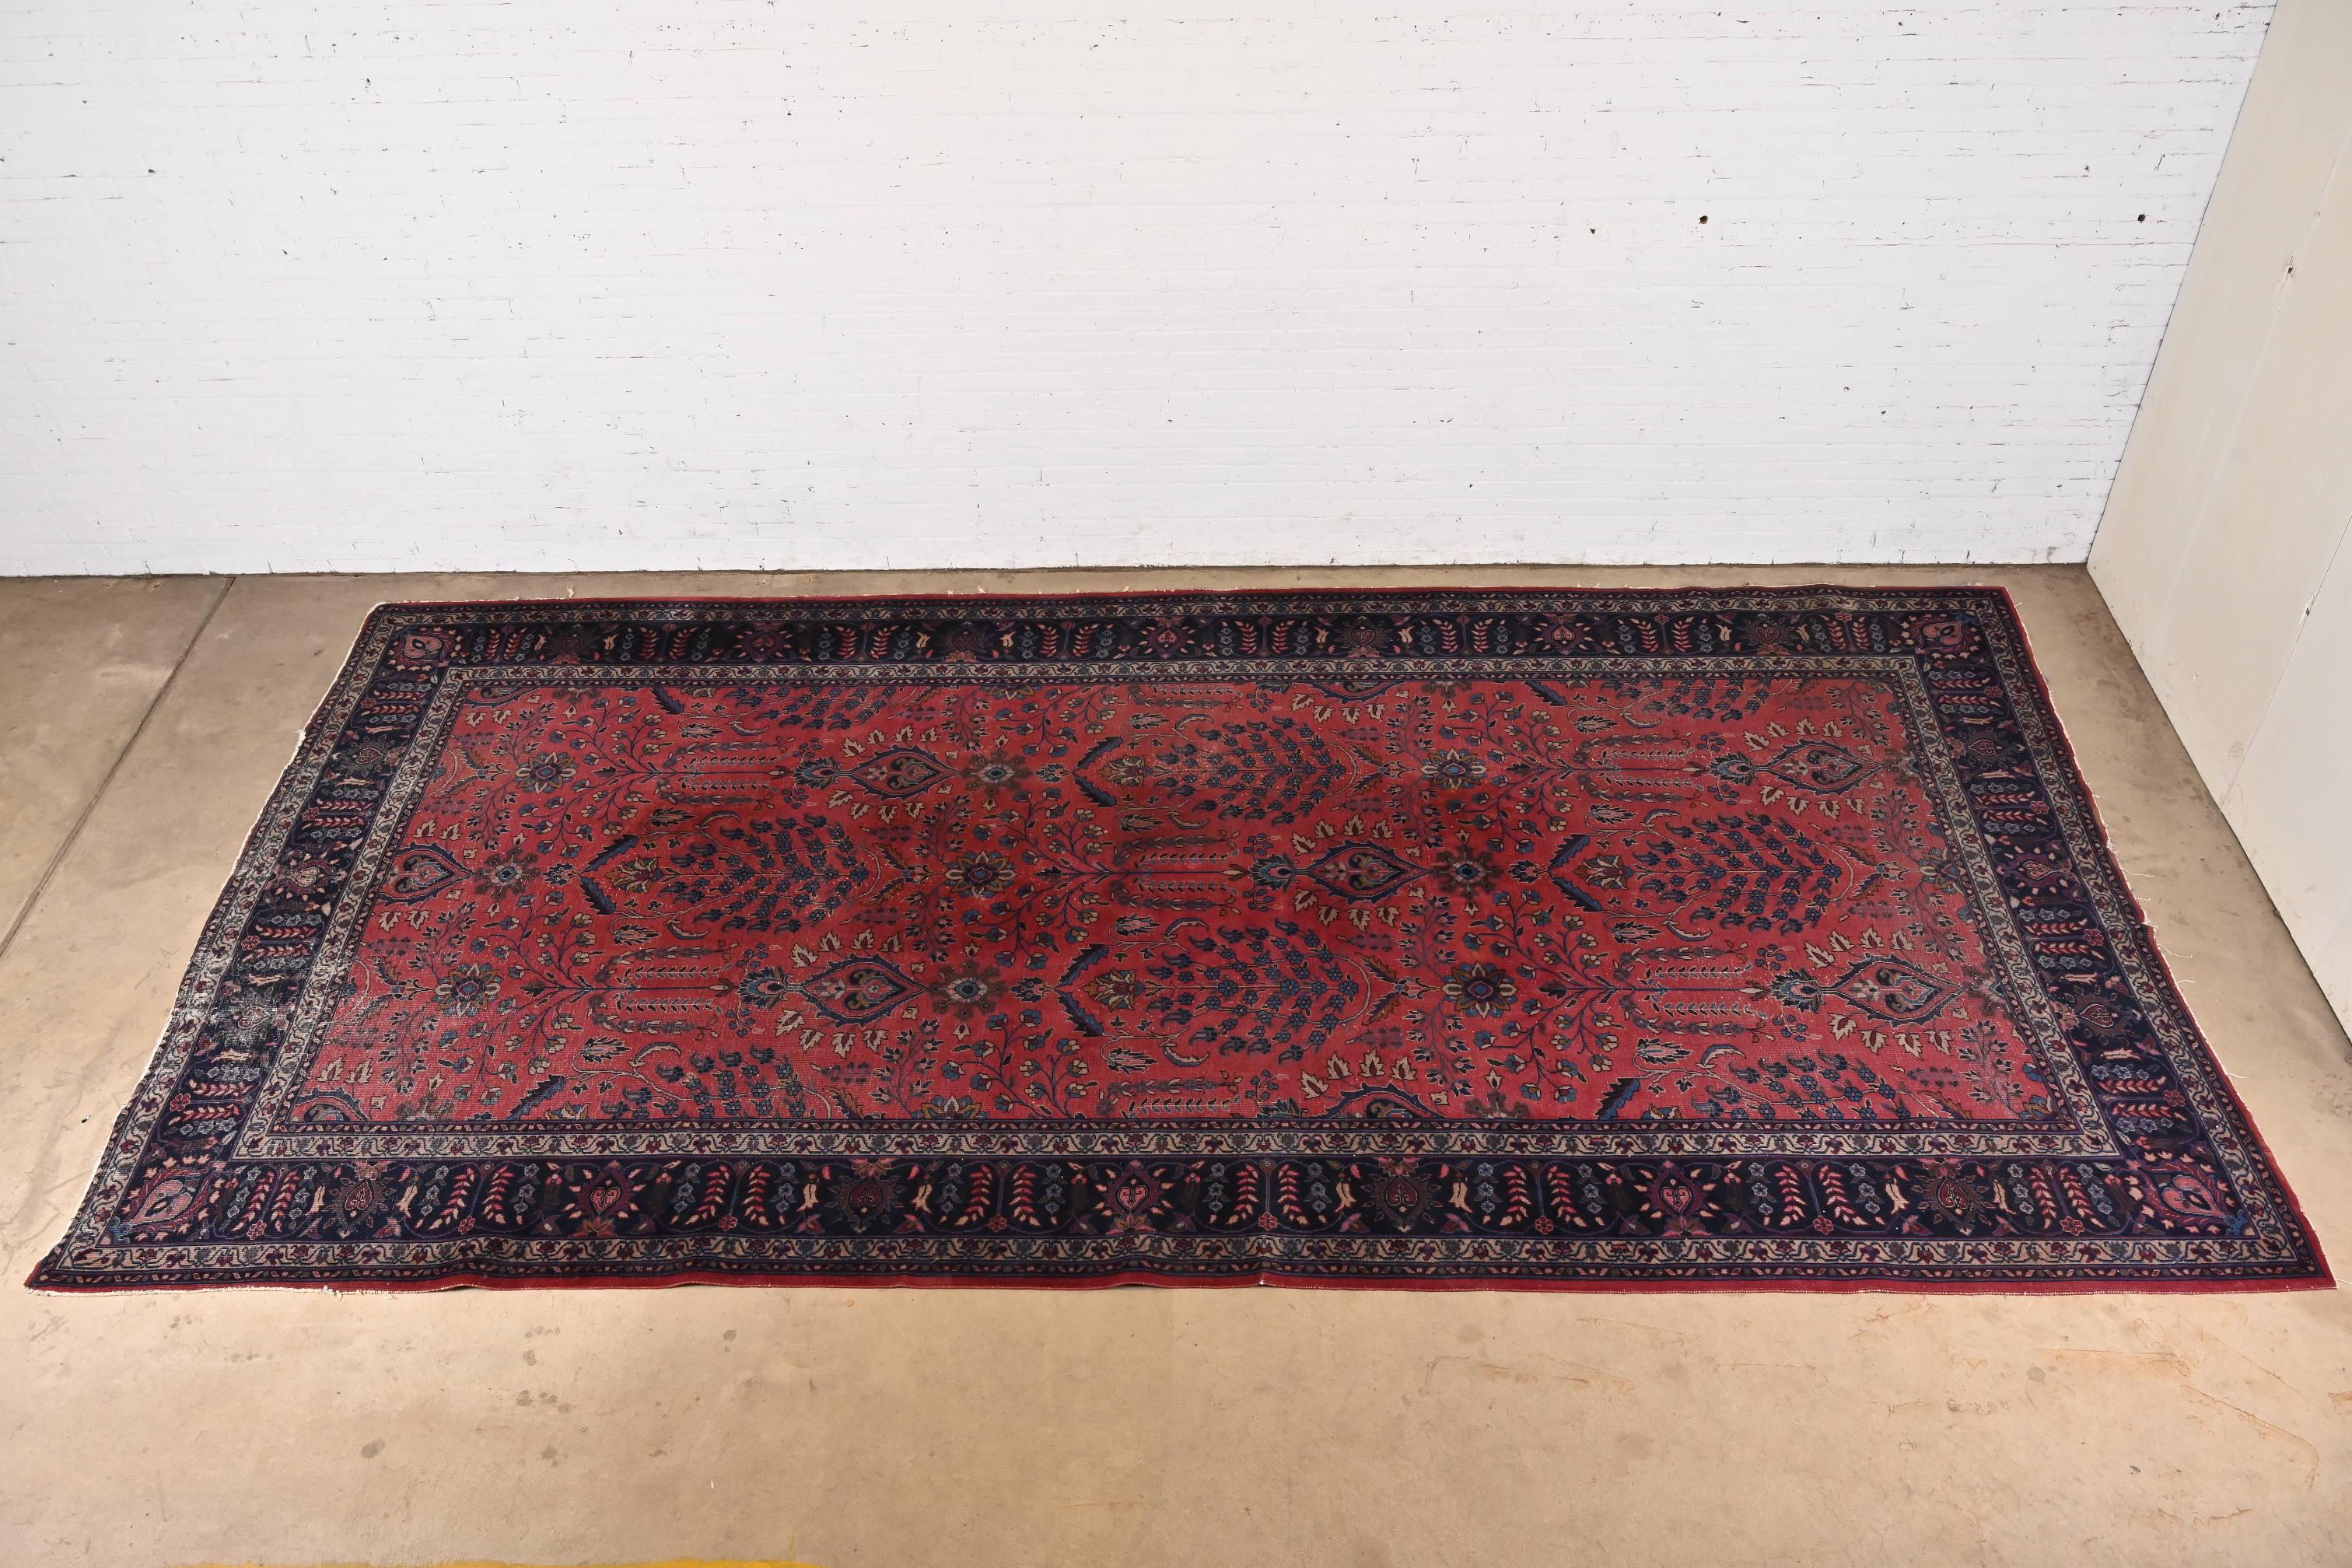 Ein prächtiger handgeknüpfter persischer Sarouk-Teppich in Zimmergröße

CIRCA 1940er Jahre

Klassisches Blumendesign mit den vorherrschenden Farben Rot, Blau und Elfenbein.

Maße: 8'11